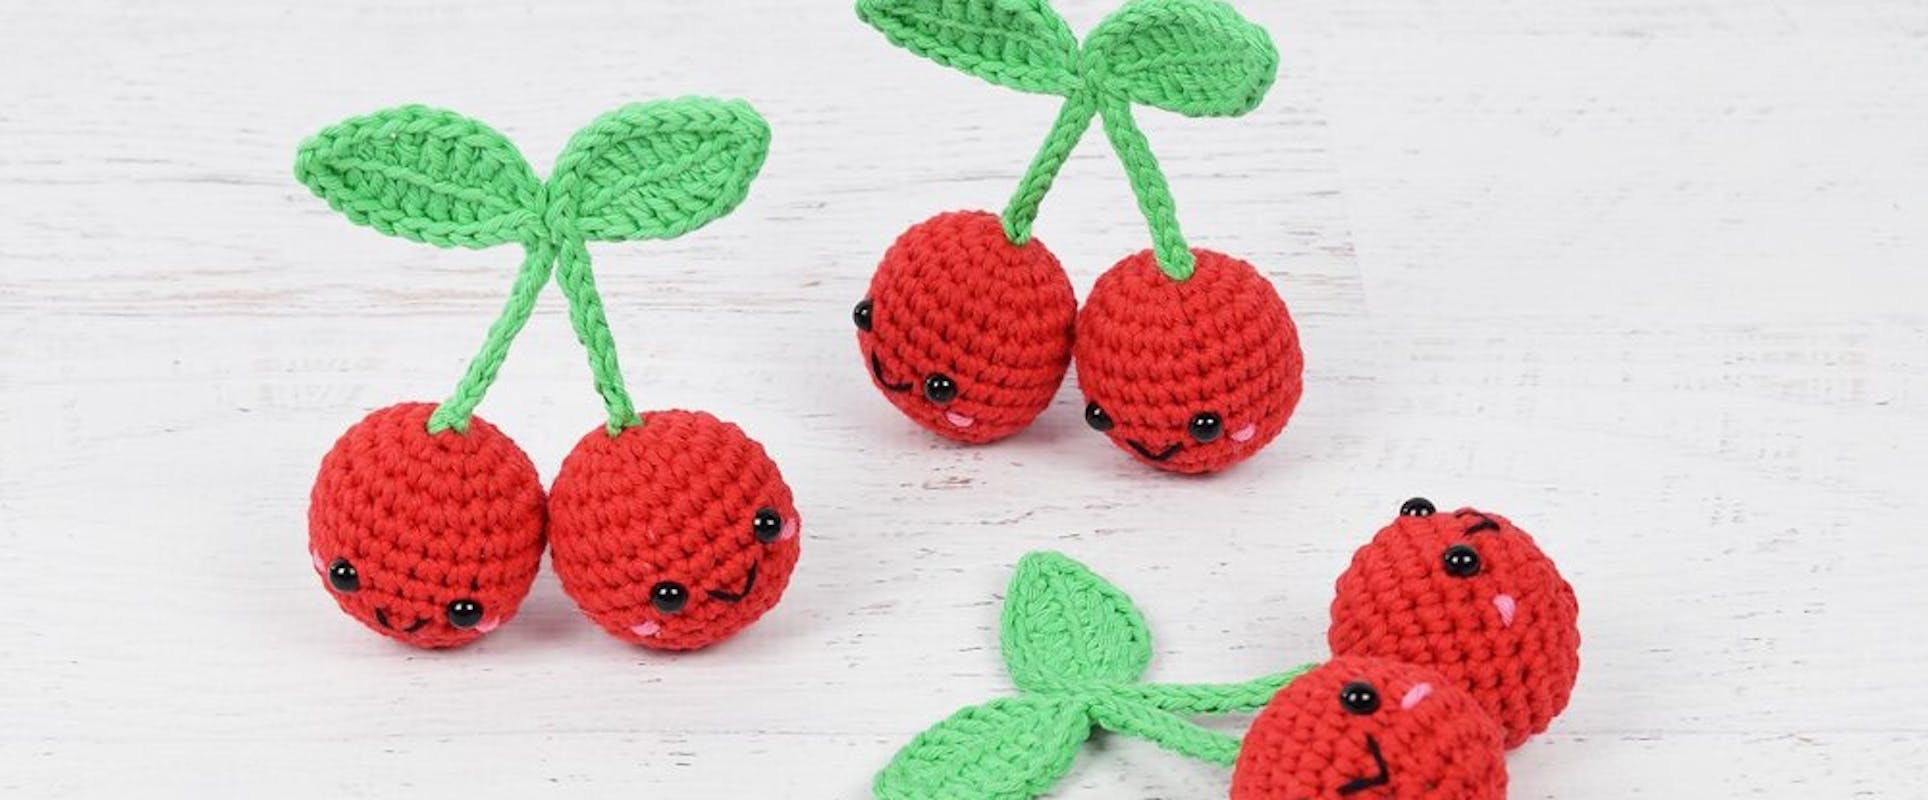 Strawberry miniature book crochet pattern  Crochet projects, Crochet, Crochet  books